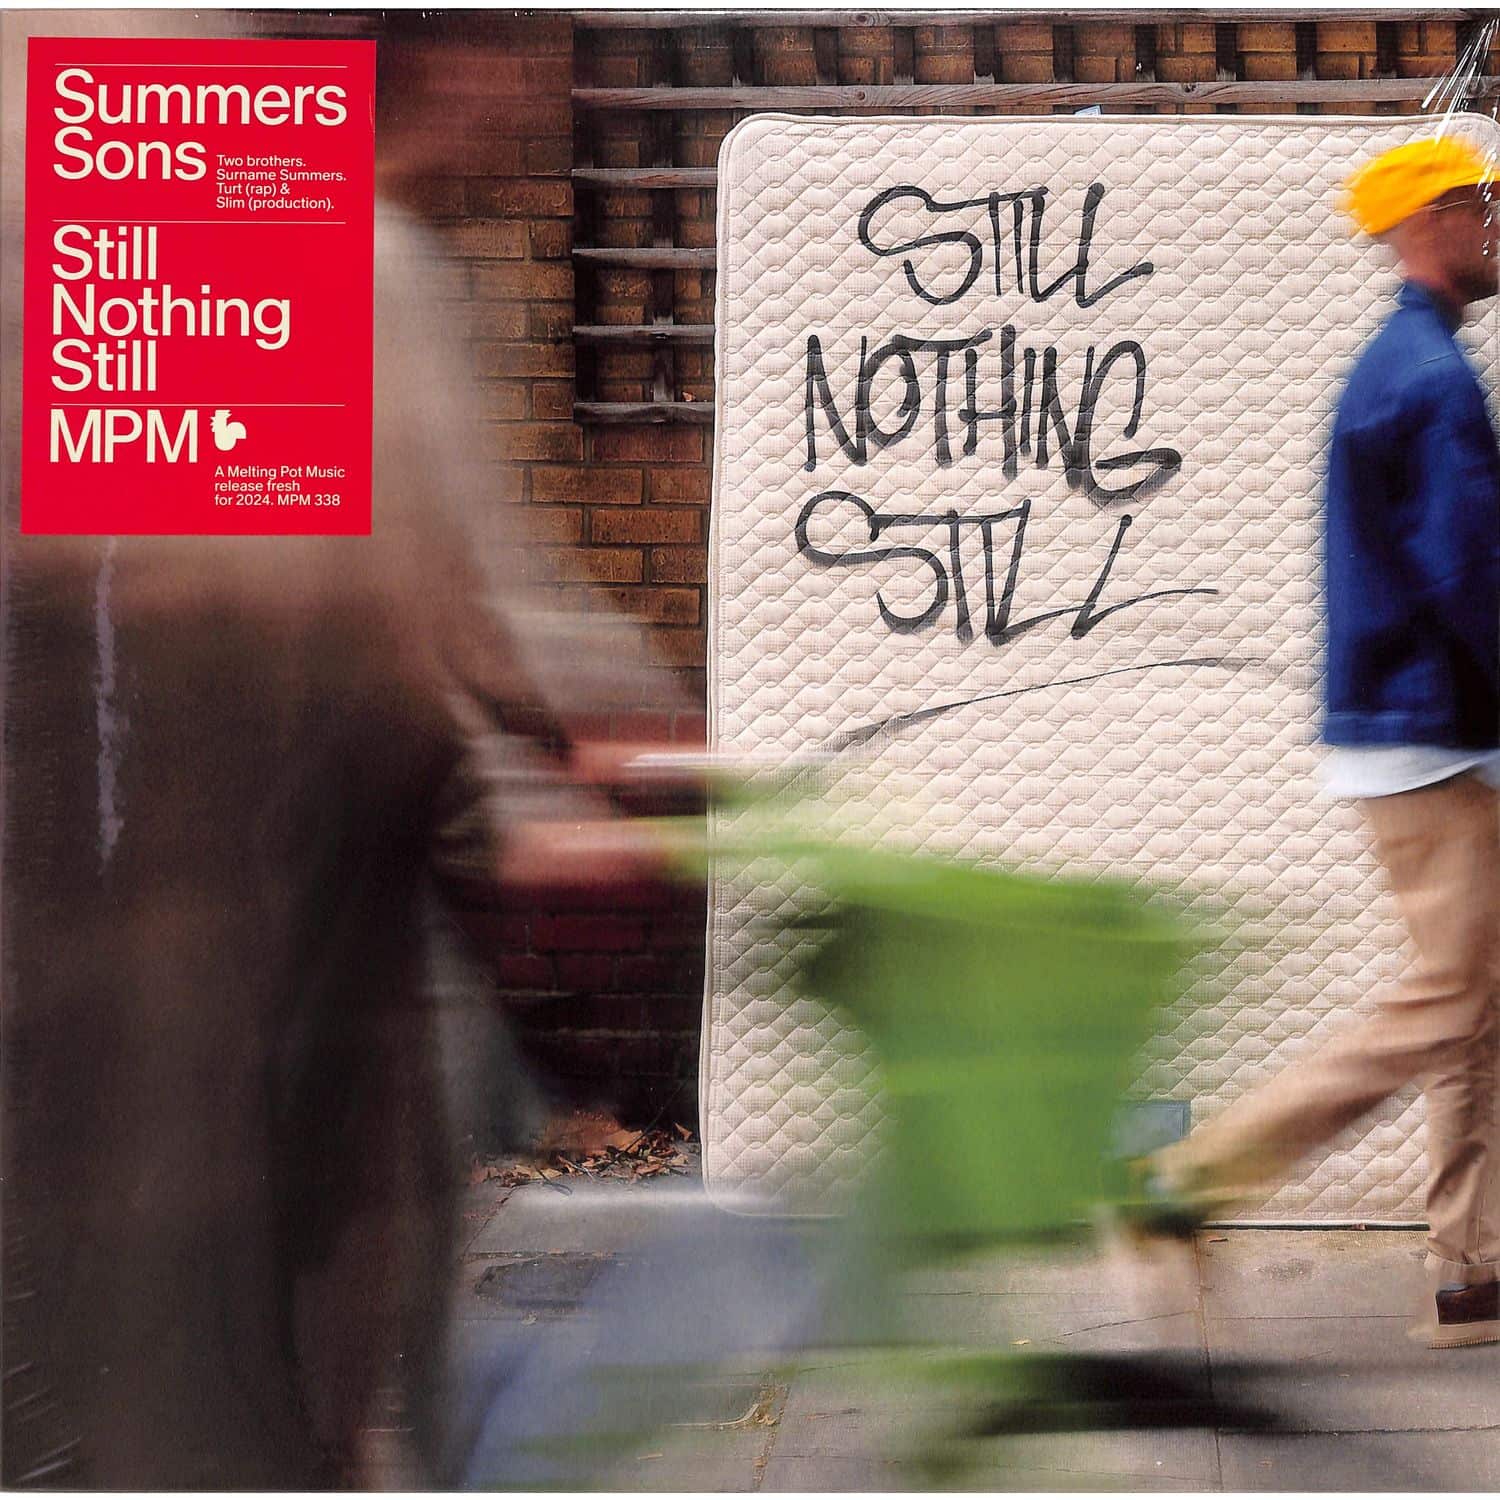 Summers Sons - STILL NOTHING STILL 